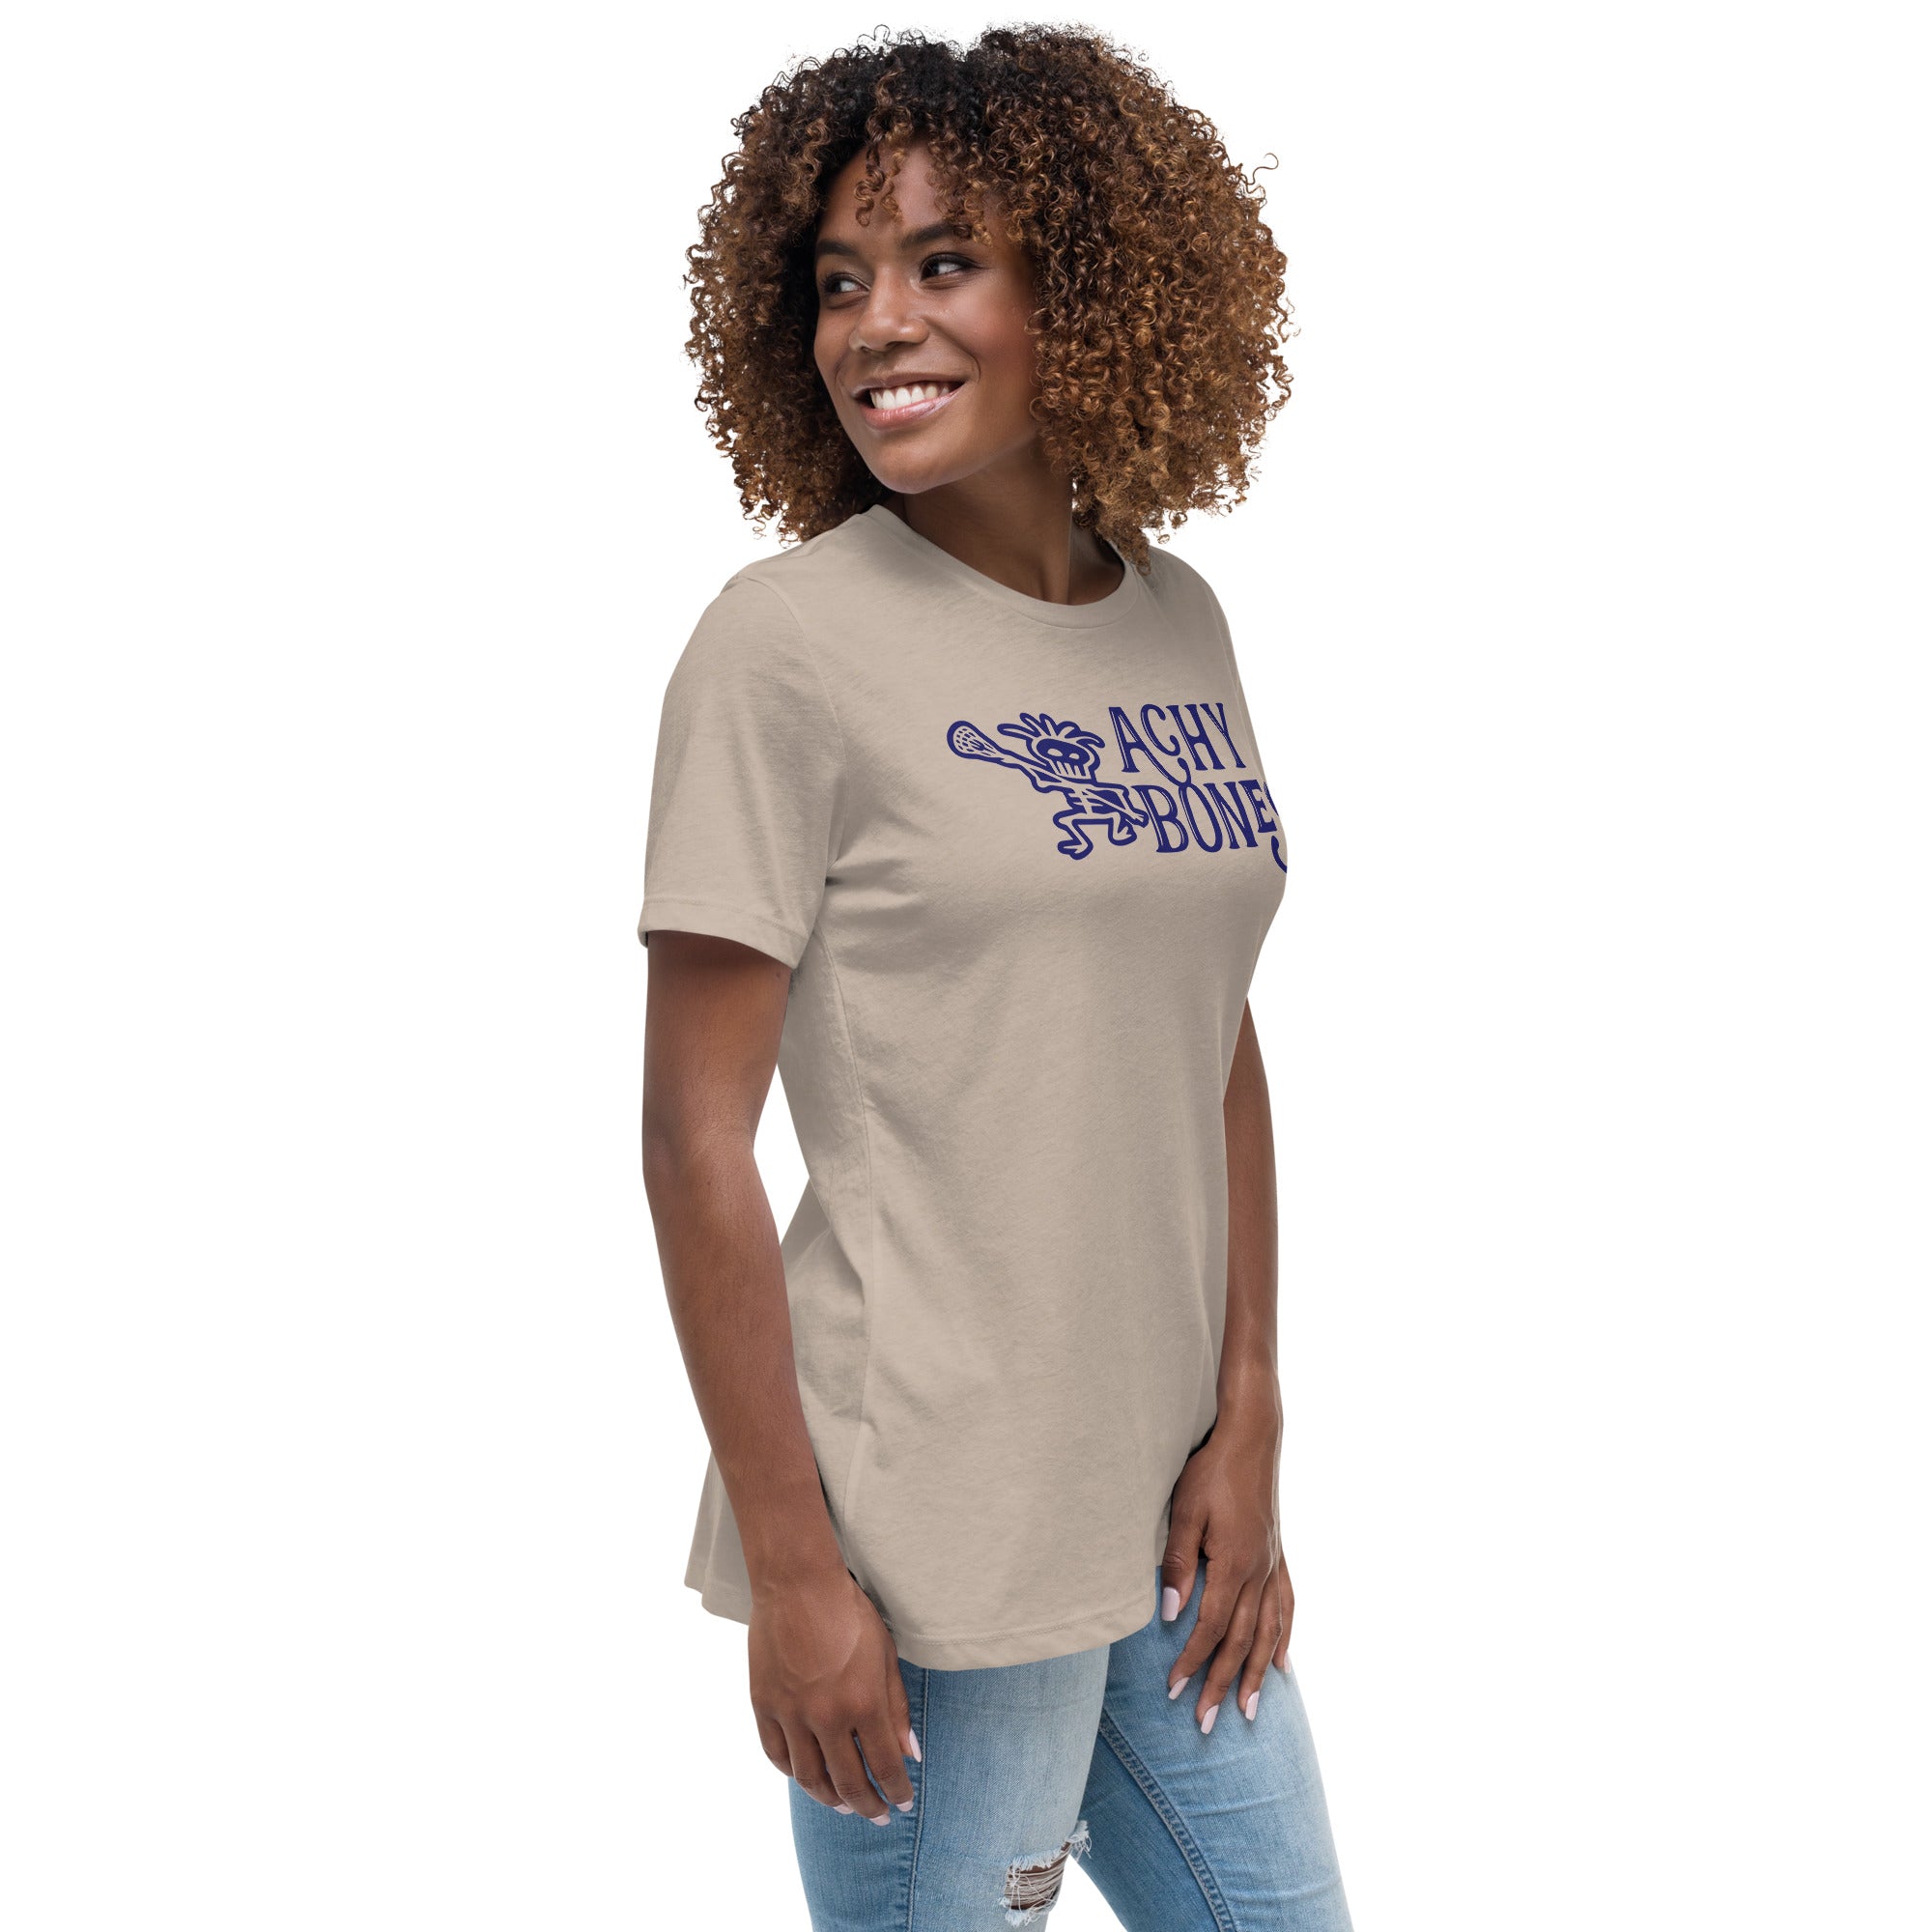 Achy Bones Women's Relaxed T-Shirt